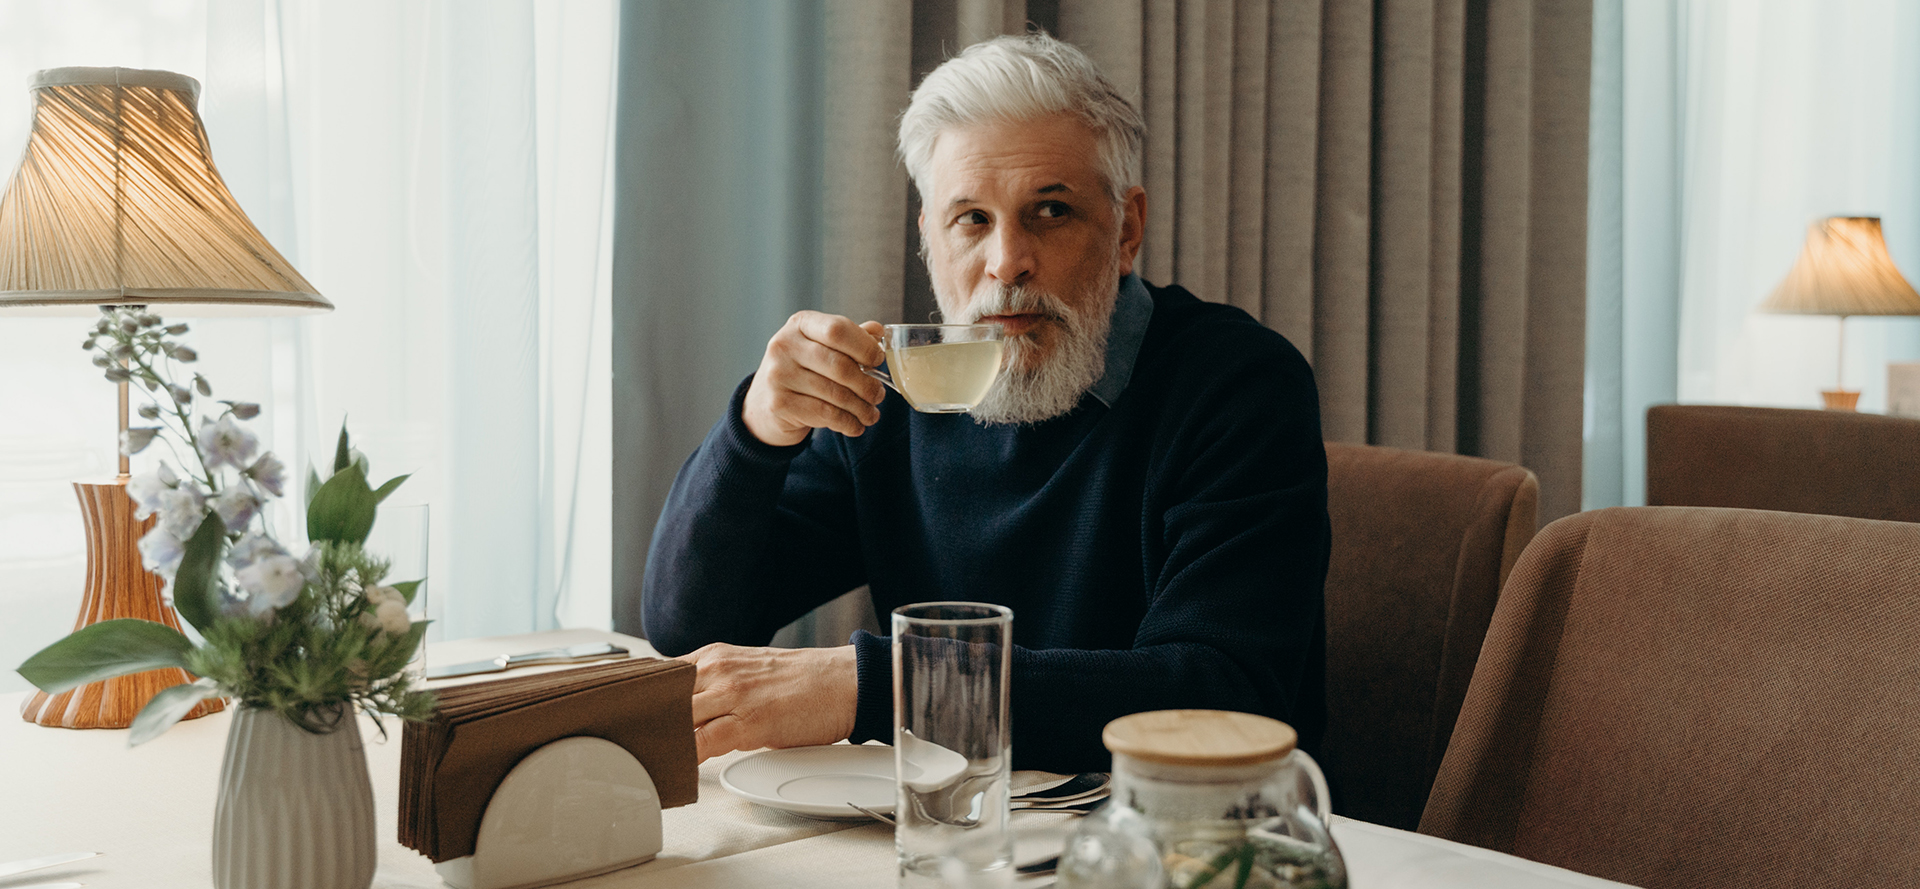 A single older man is drinking tea.